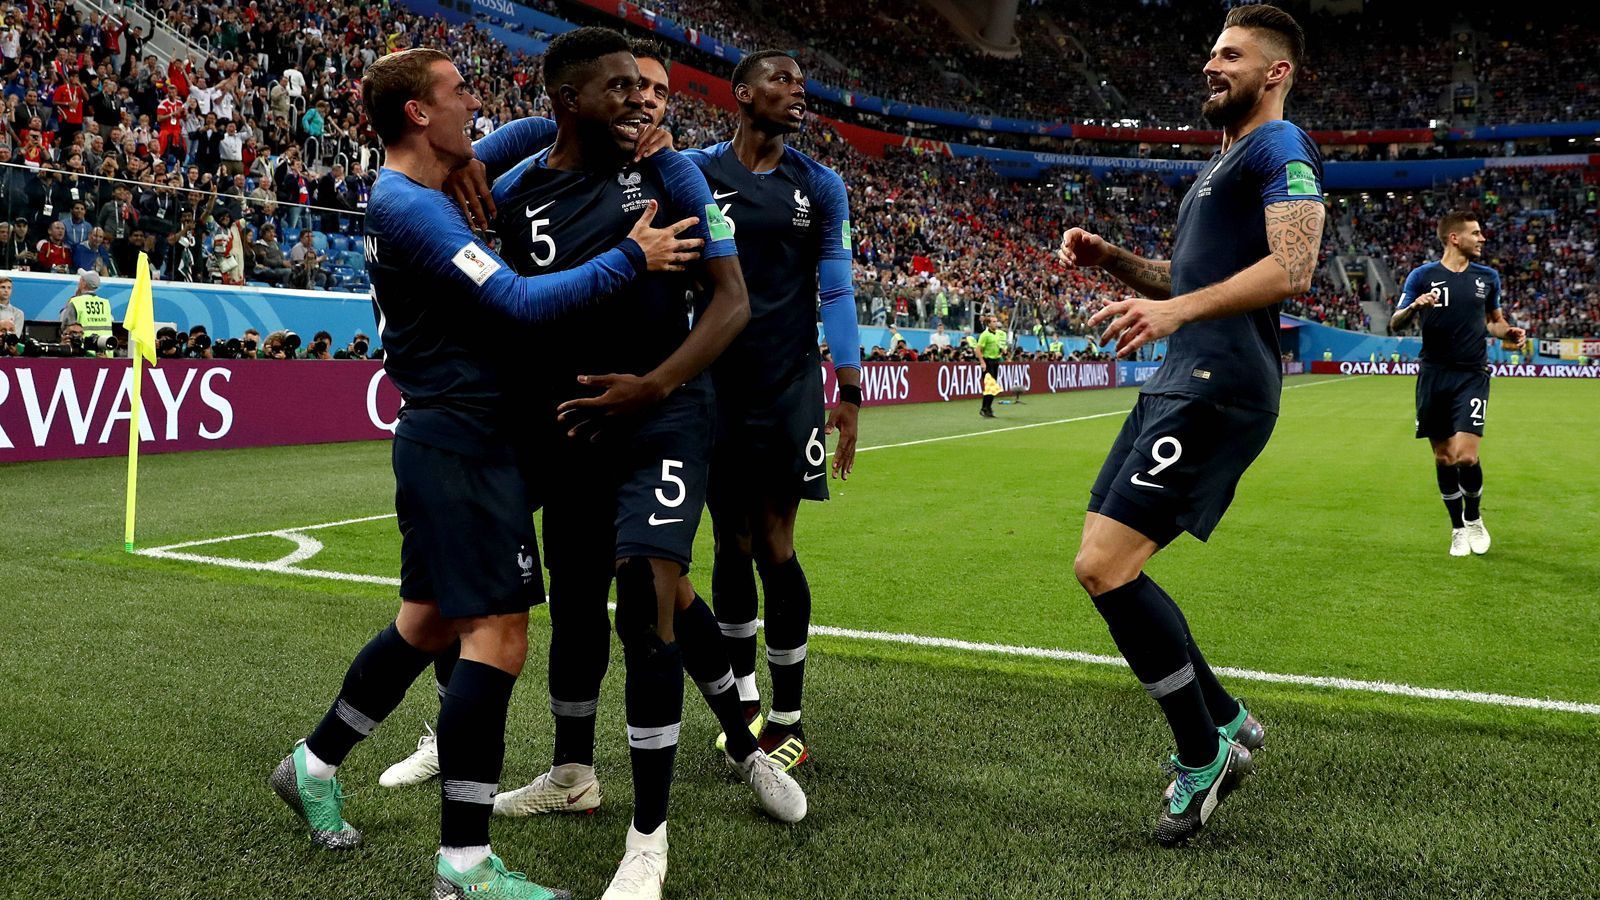 
                <strong>Endergebnis: 6:5 für Frankreich</strong><br>
                Frankreich zog aufgrund ihrer Vorteile in der Defensive zunächst davon, Kroatien holte mit ihren Stärken in der Offensive wieder auf. Bei uns rettet Frankreich den Vorsprung gerade noch über die Ziellinie. Oder besser gesagt: bis zum Schlusspfiff. Eines scheint somit sicher zu sein: Das WM-Finale wird ein Duell auf Augenhöhe - freuen wir uns drauf.
              